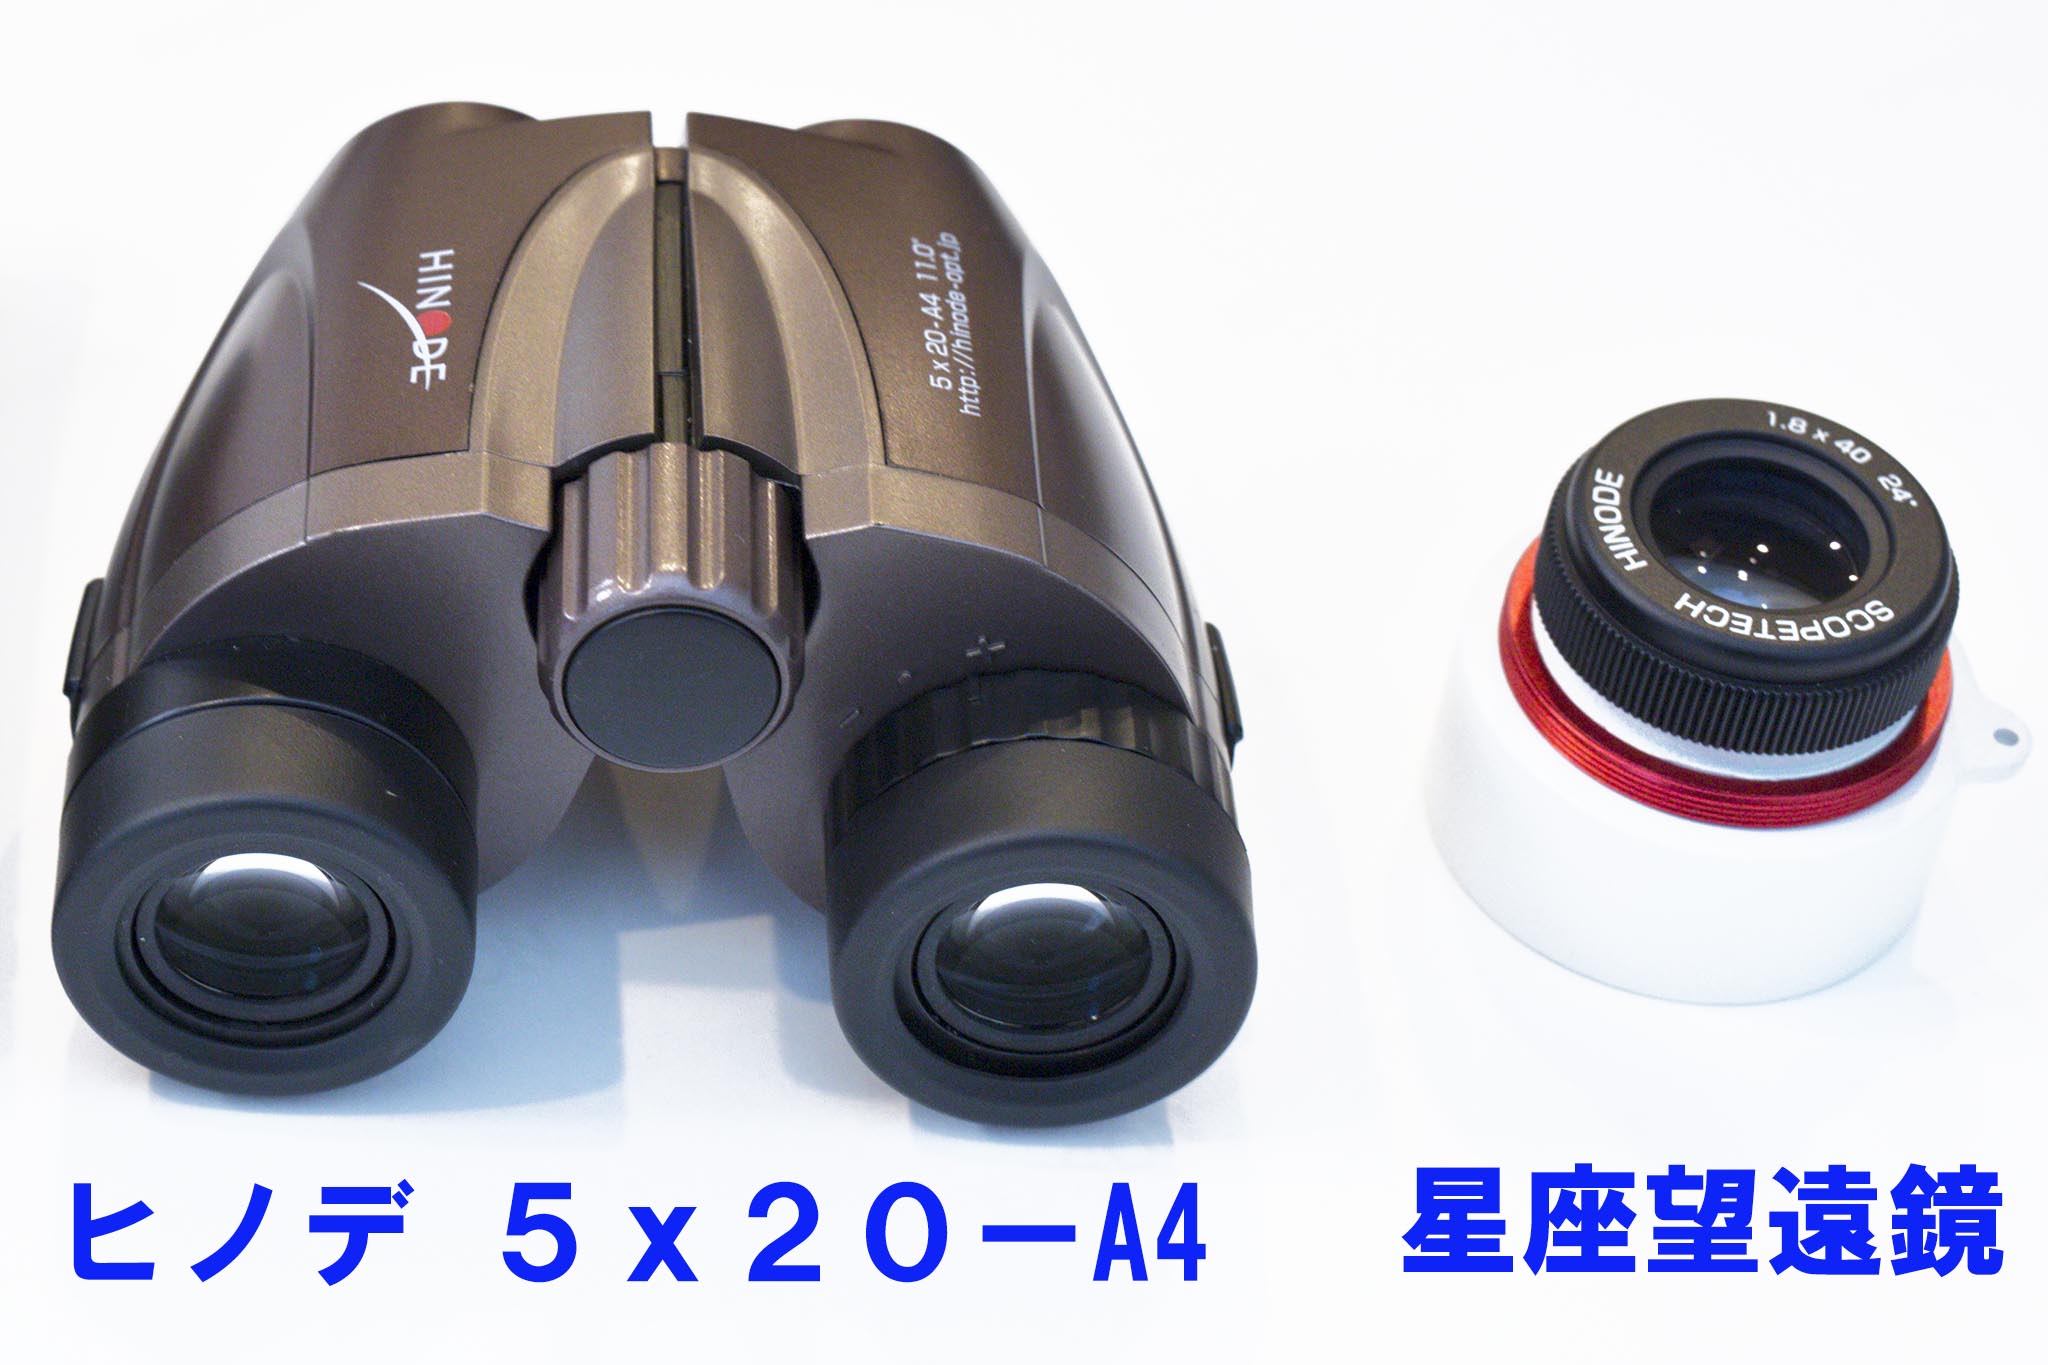 日の出光学 双眼鏡 ヒノデ6× 21-S1 - その他